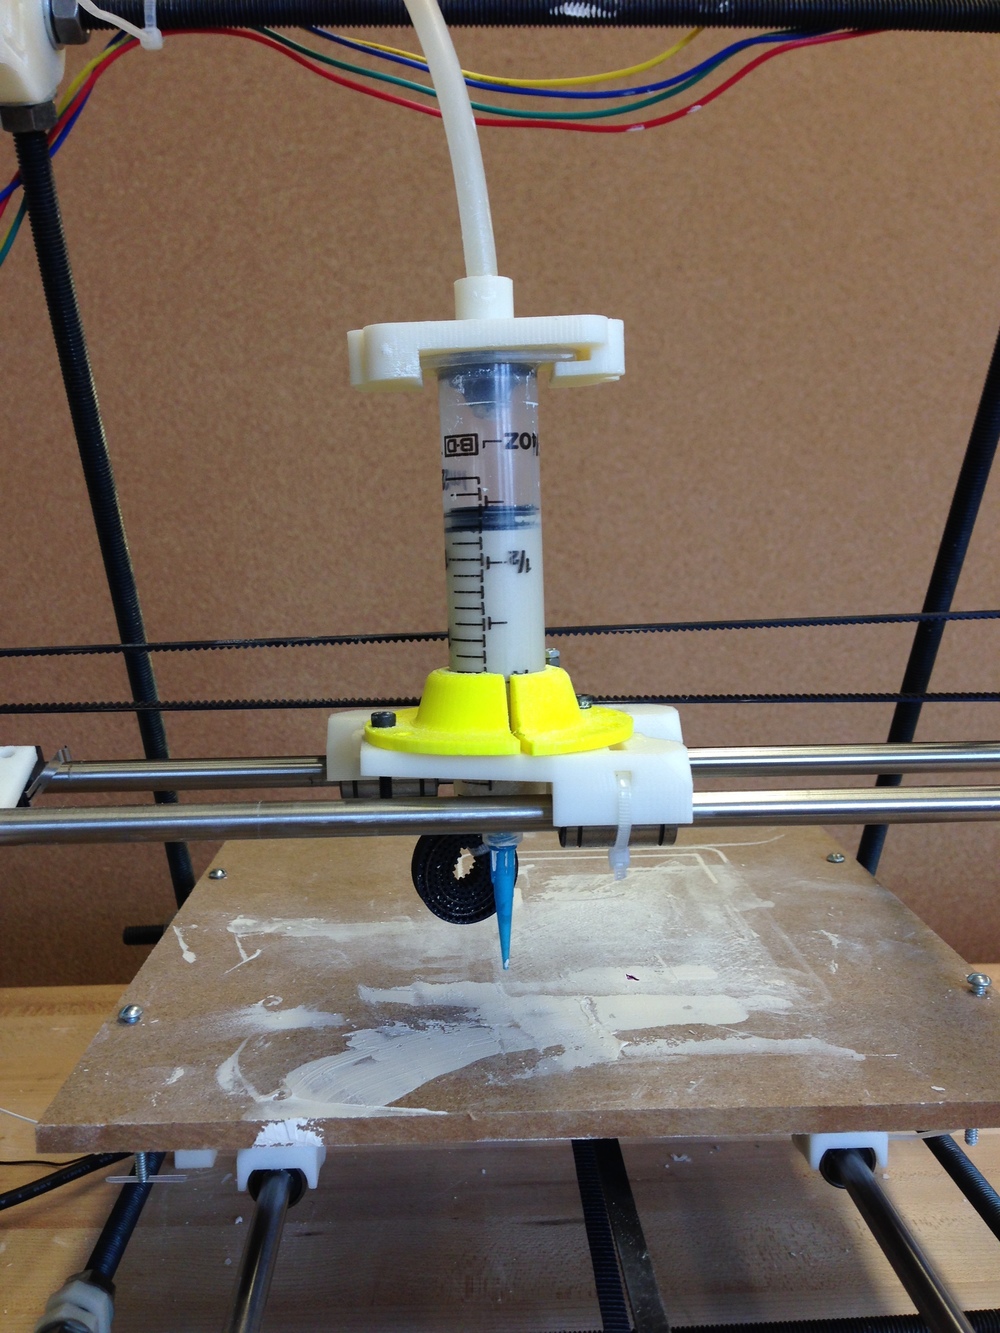 siv os selv gør ikke Ceramic 3D printer — Luke Arnone